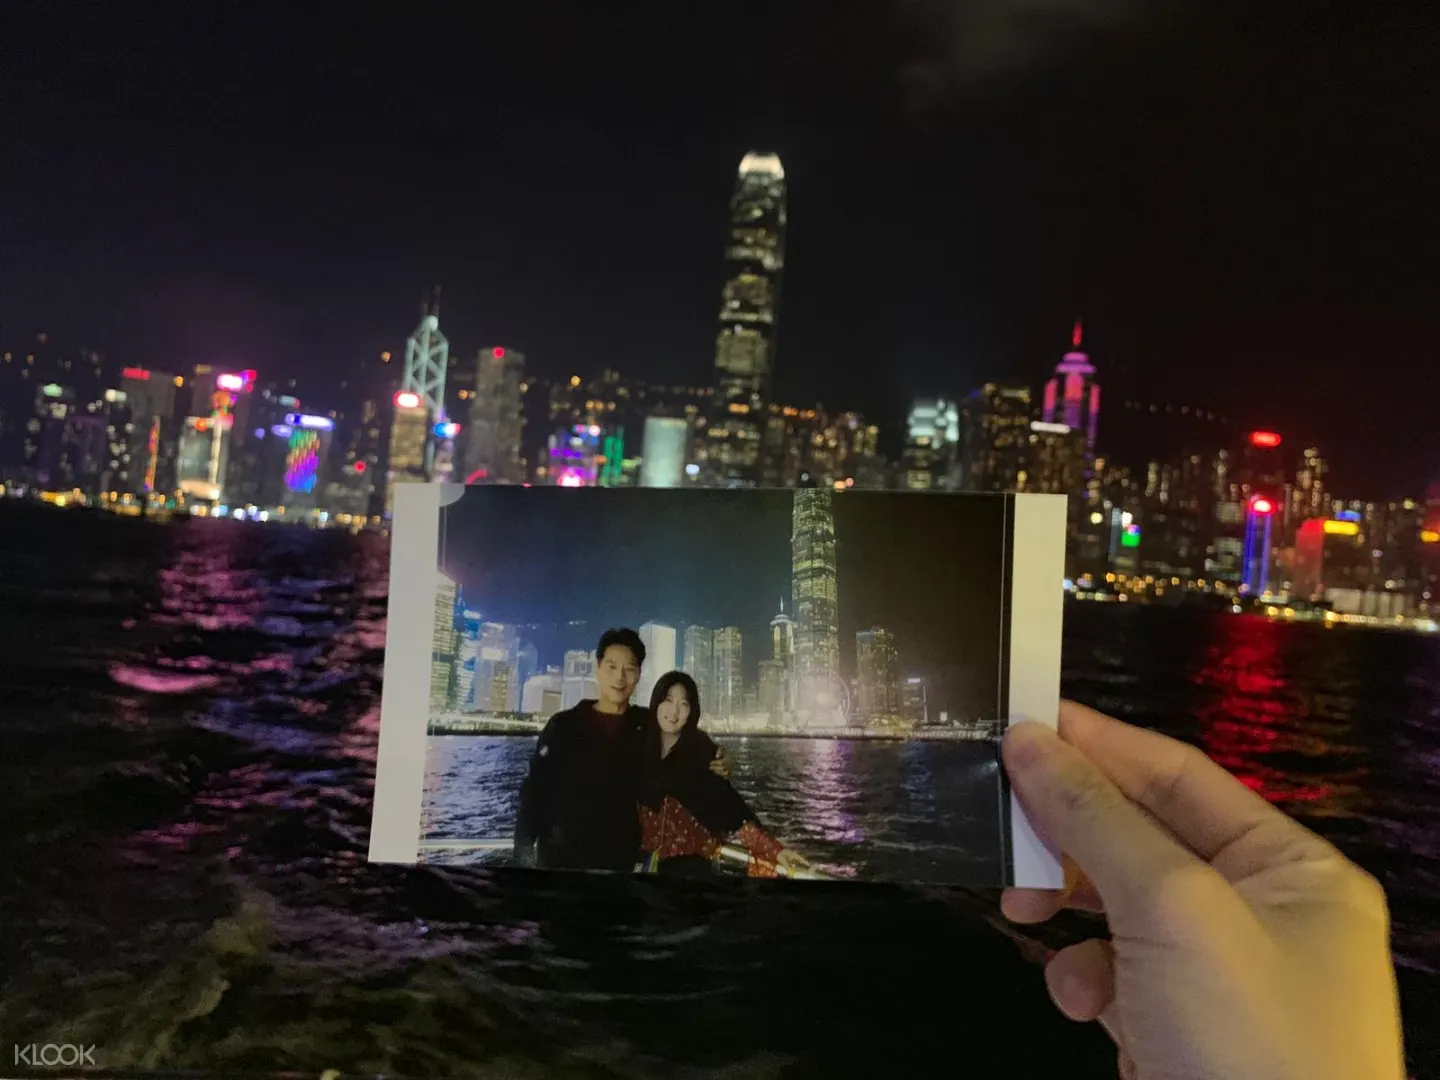 維多利亞港夜景和燈光秀 香港豪華遊艇夜遊之旅 Klook客路香港香港